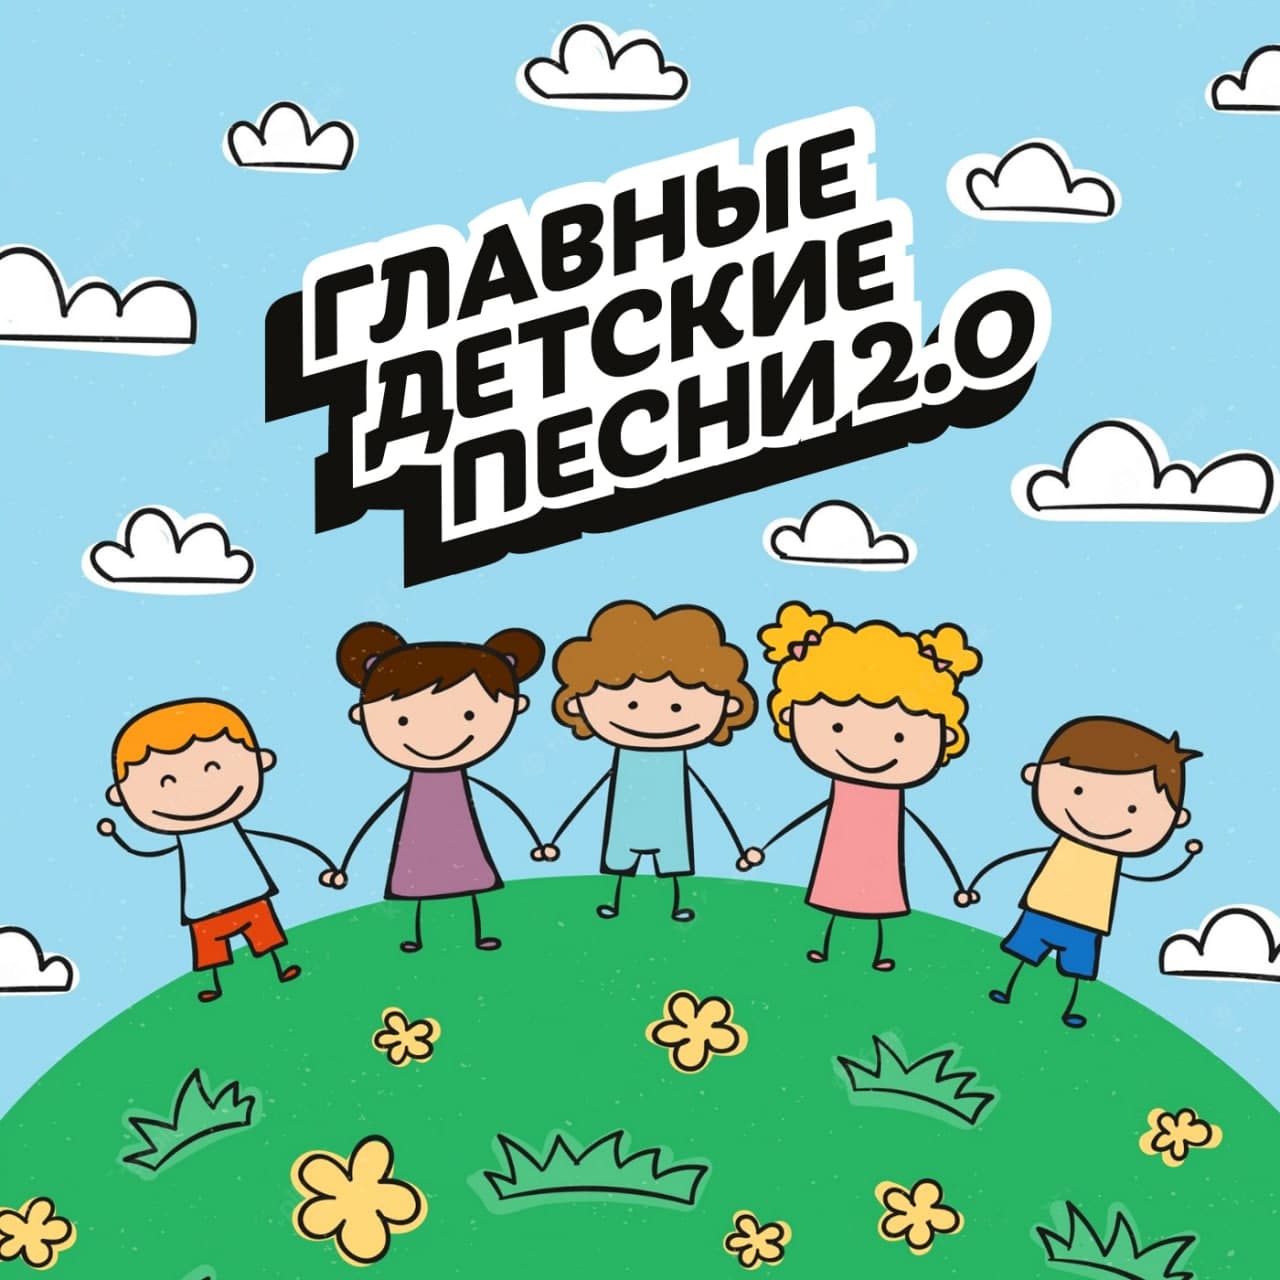 Главные детские песни 2.0 от Музея Победы